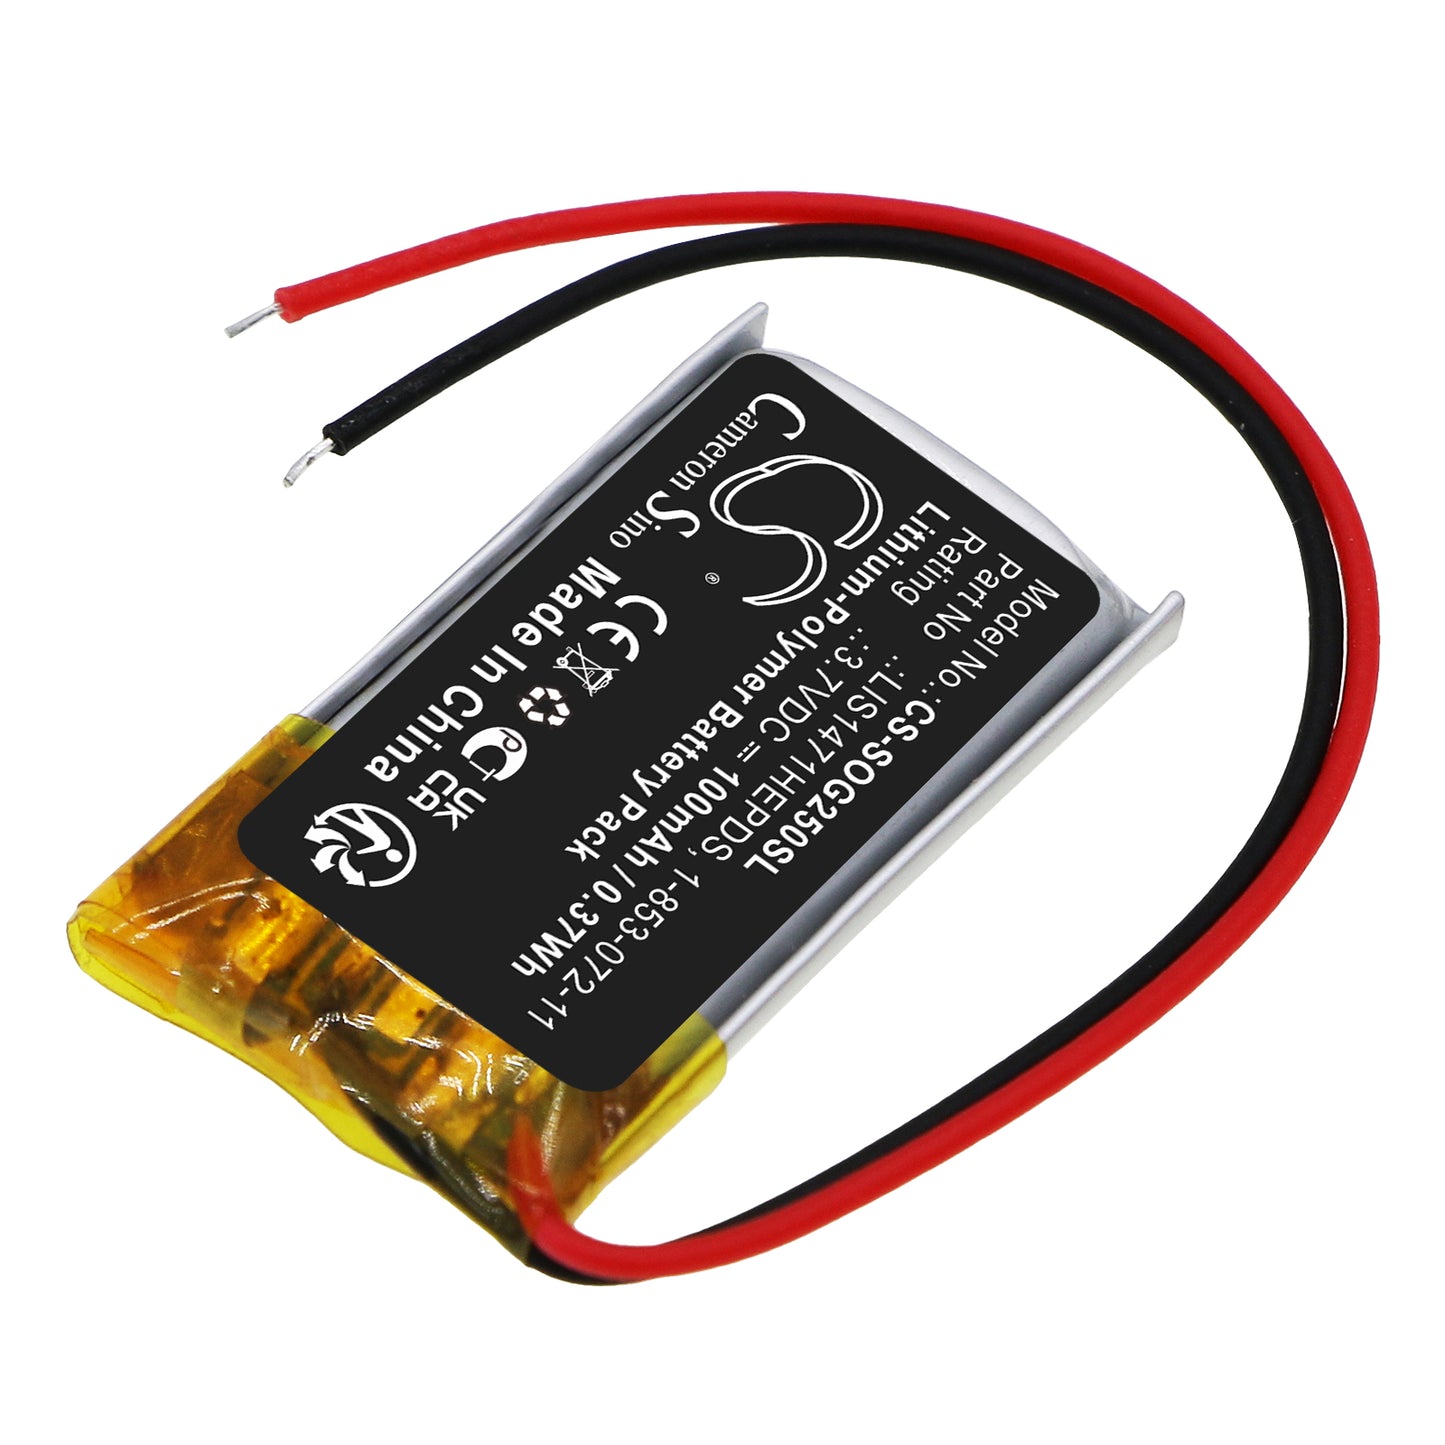 100mAh LIS1471HEPDS, 1-853-072-11 Battery for Sony TDG-250, TDG-BR250-SMAVtronics